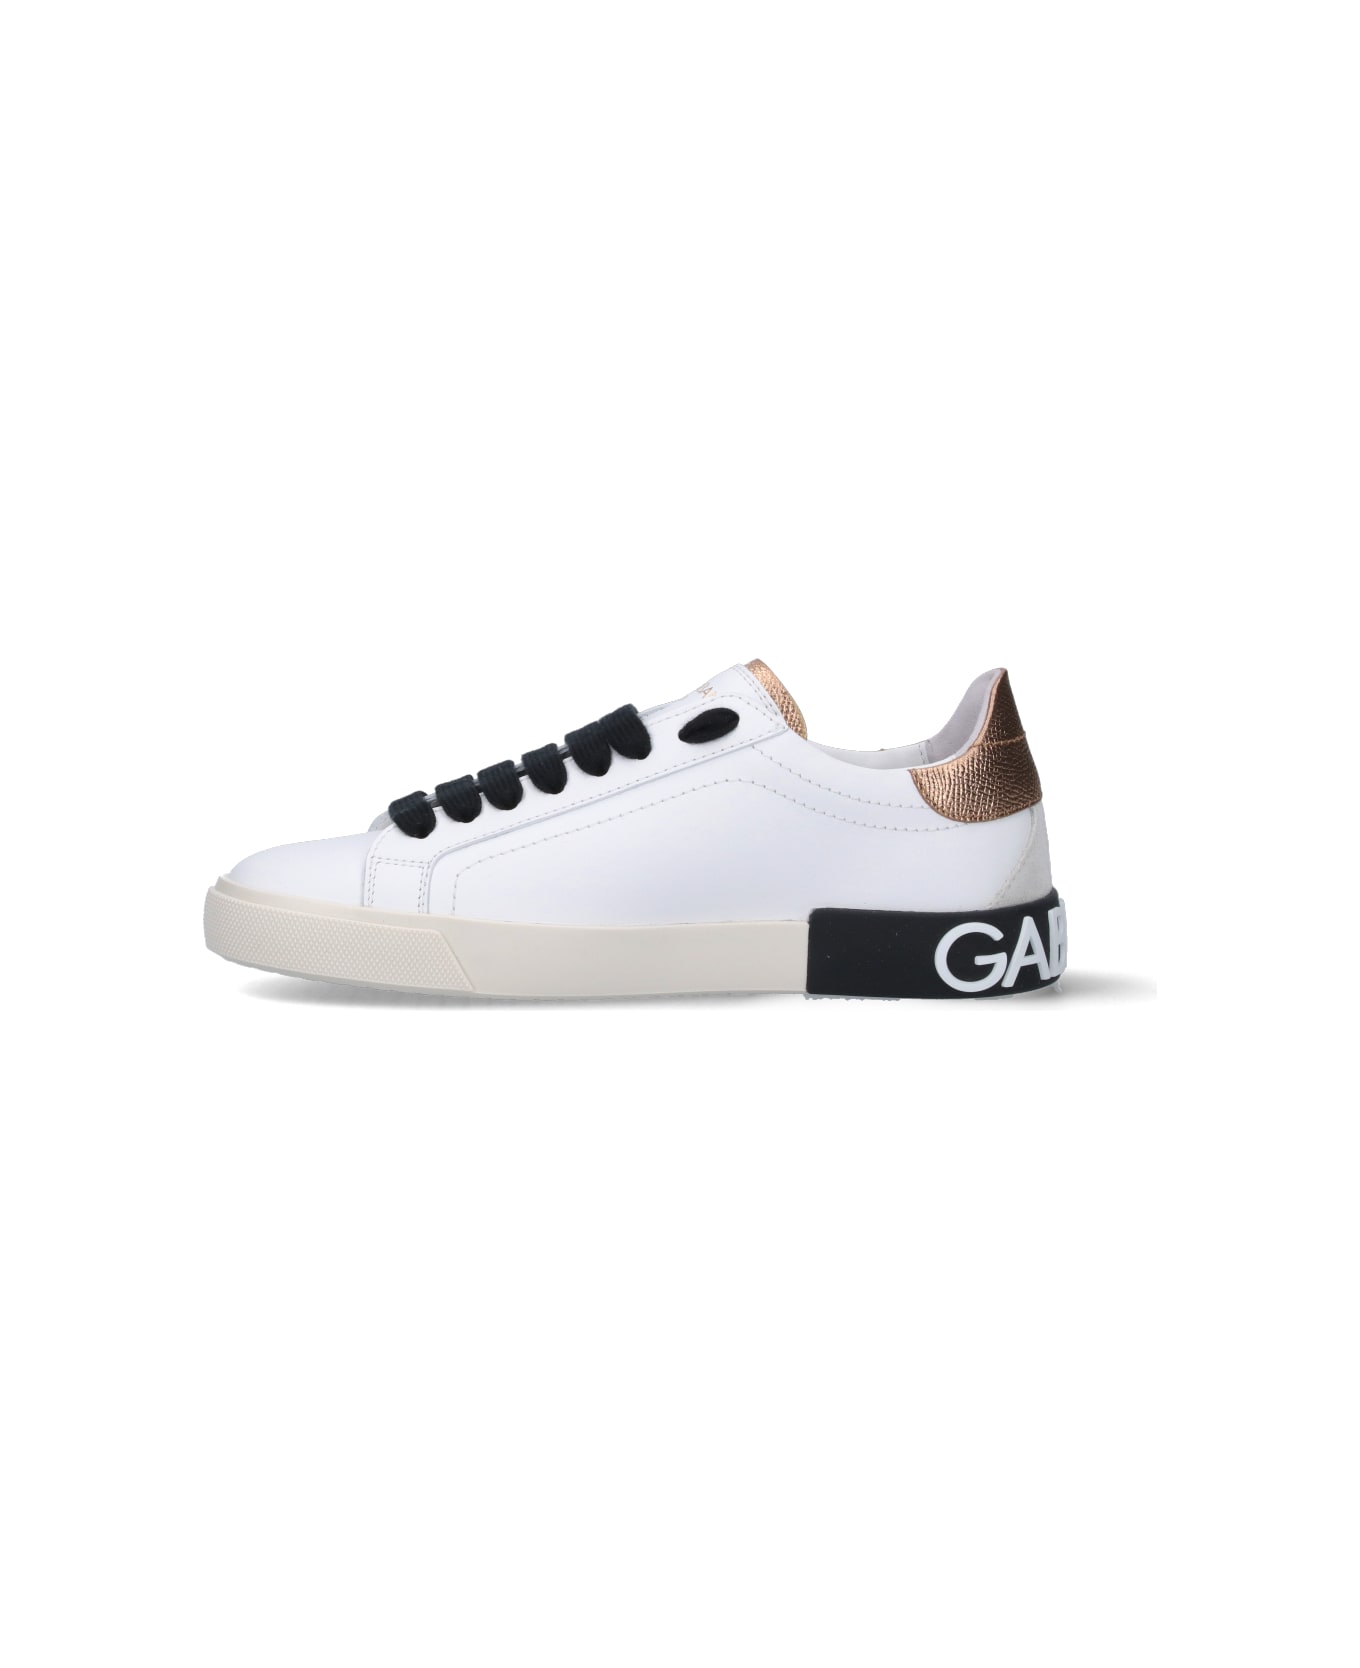 Dolce & Gabbana "portofino" Sneakers - White スニーカー